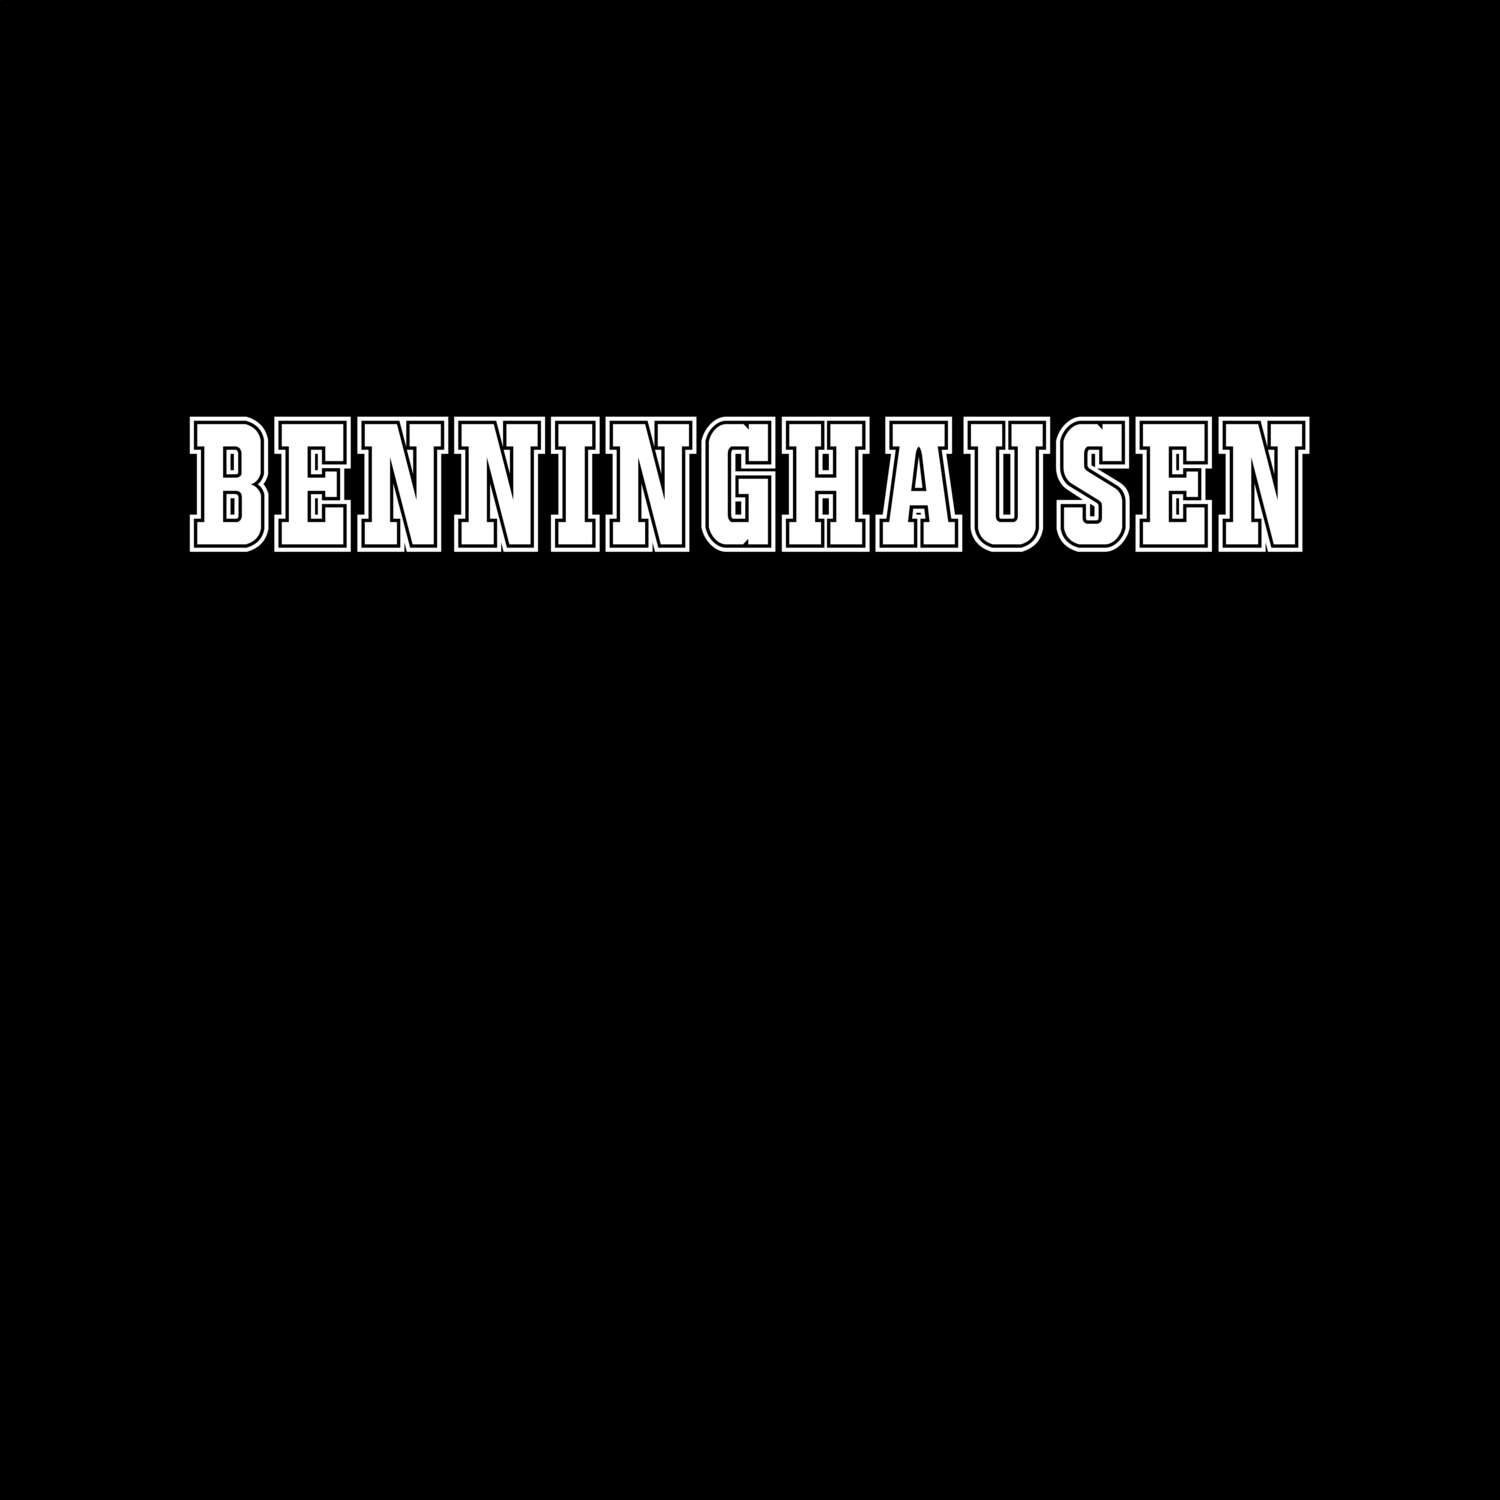 Benninghausen T-Shirt »Classic«